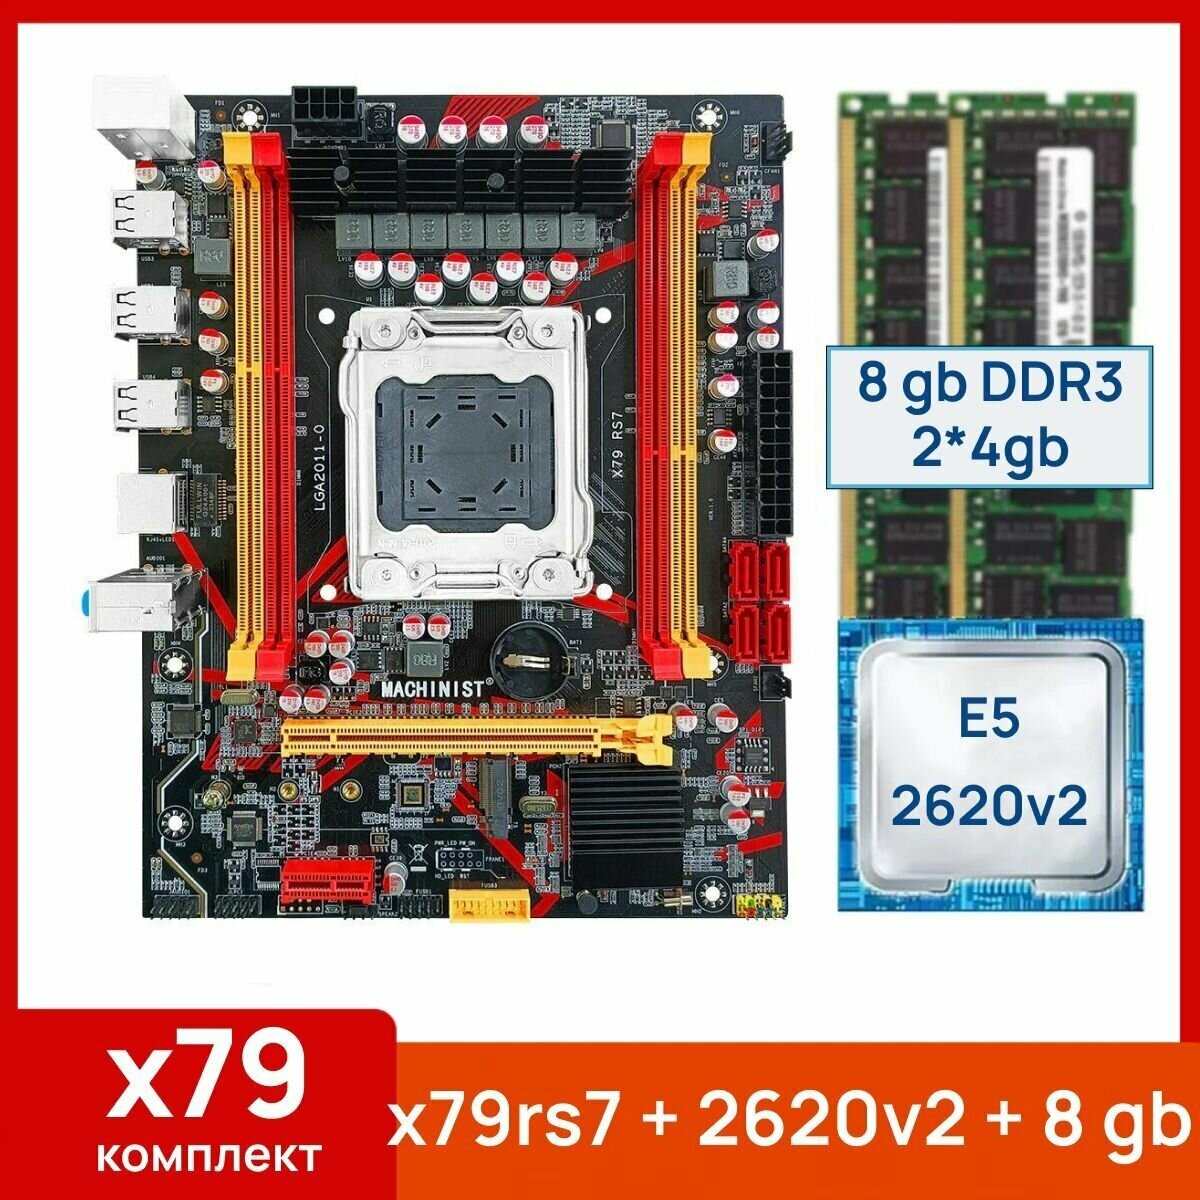 Комплект: Материнская плата Machinist RS-7 + Процессор Xeon E5 2620v2 + 8 gb(2x4gb) DDR3 серверная